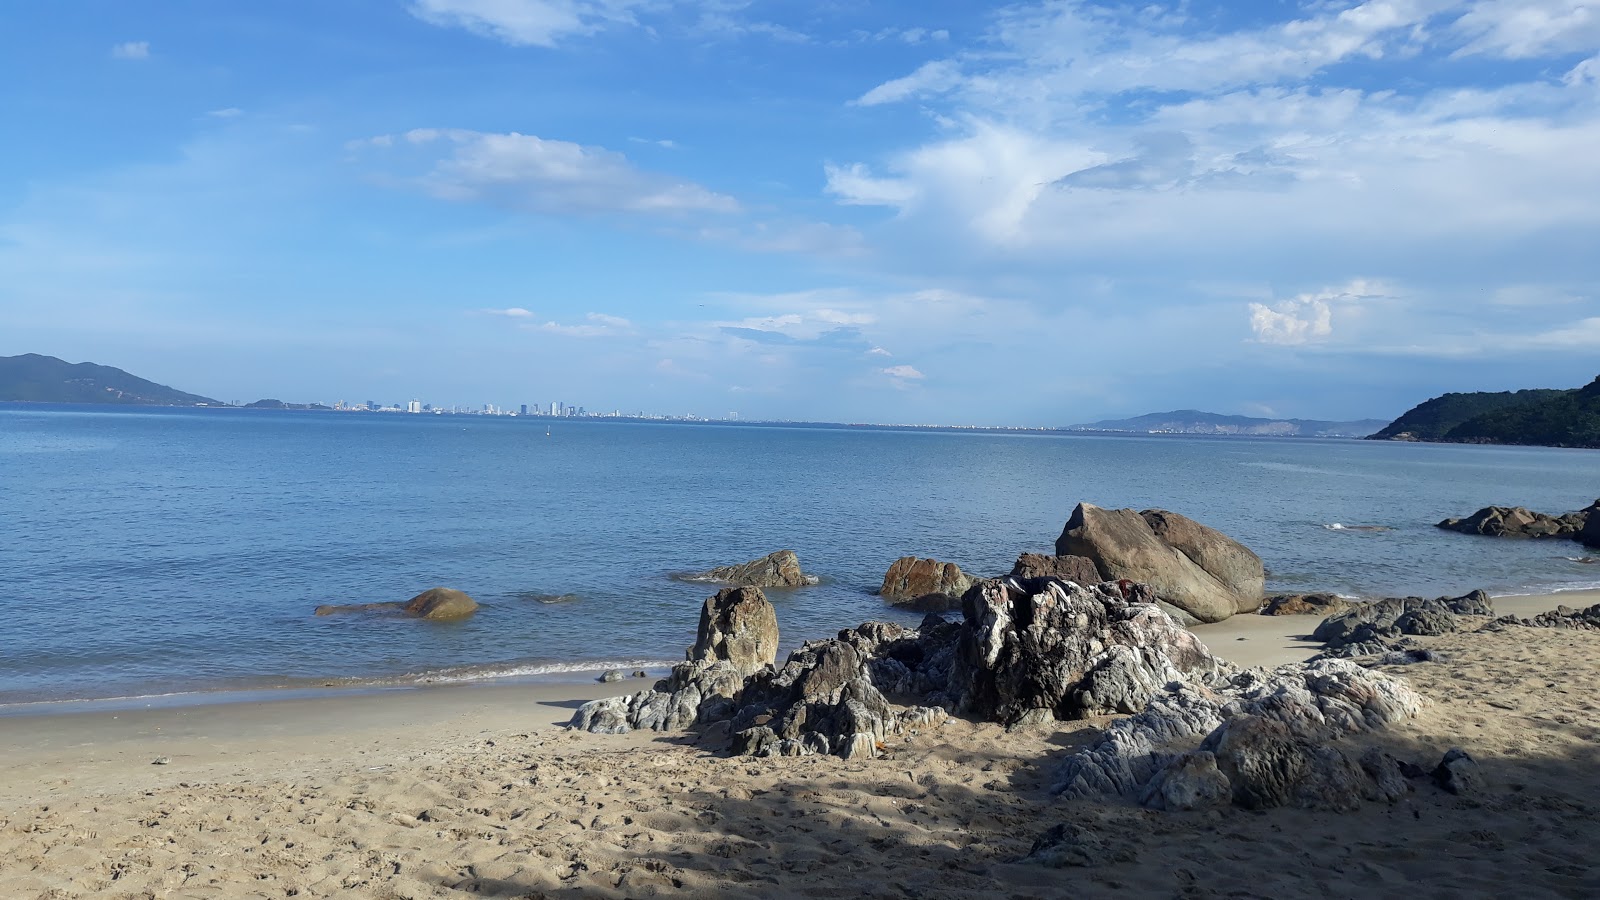 Sung Co Beach'in fotoğrafı doğrudan plaj ile birlikte